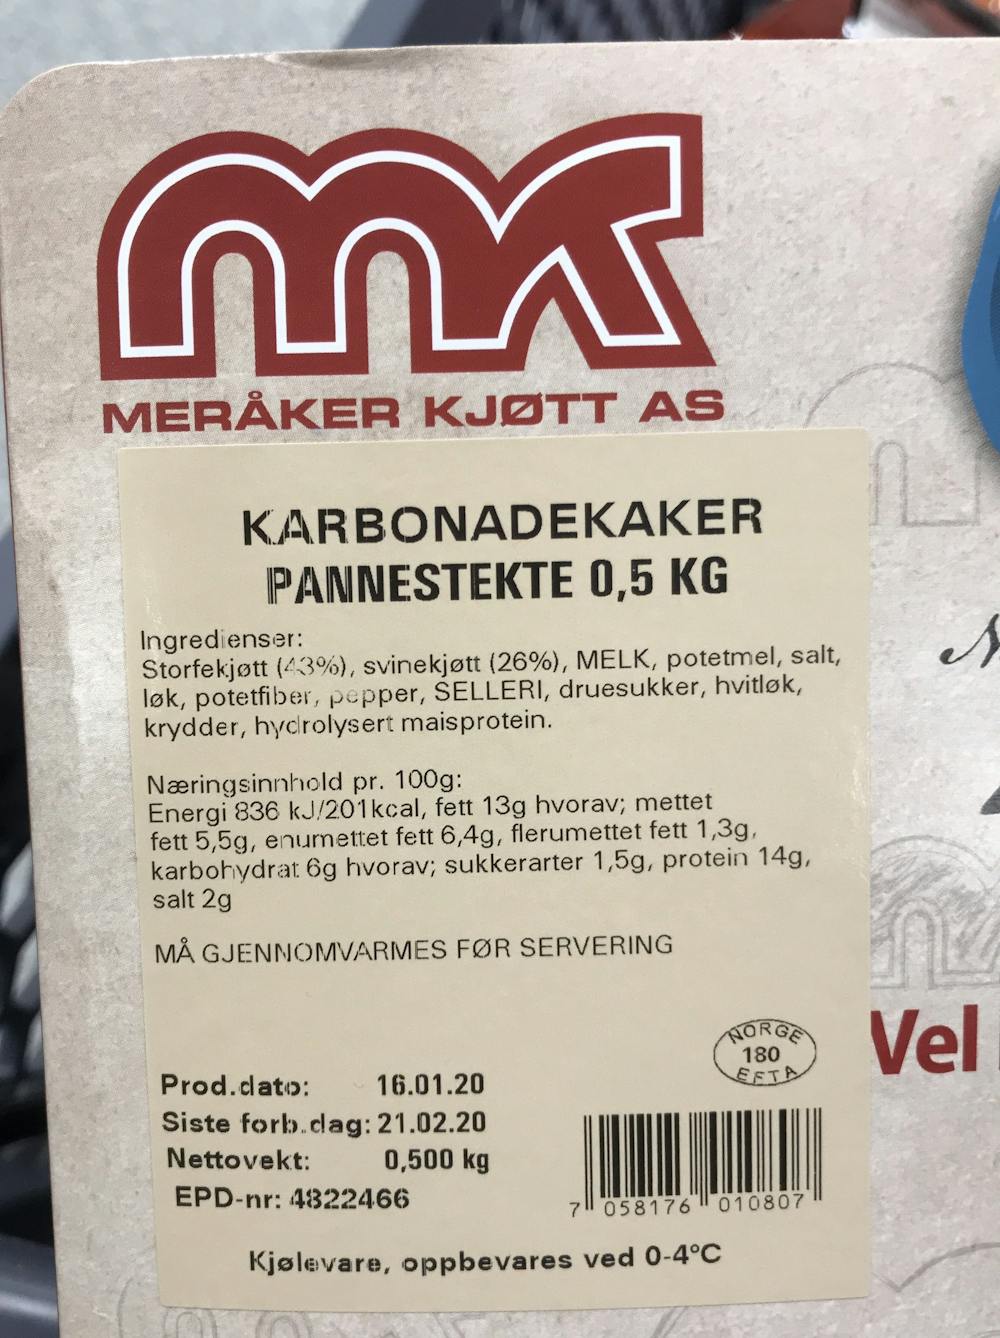 Ingredienslisten til Meråker kjøtt AS  Karbonadekaker, pannestekste